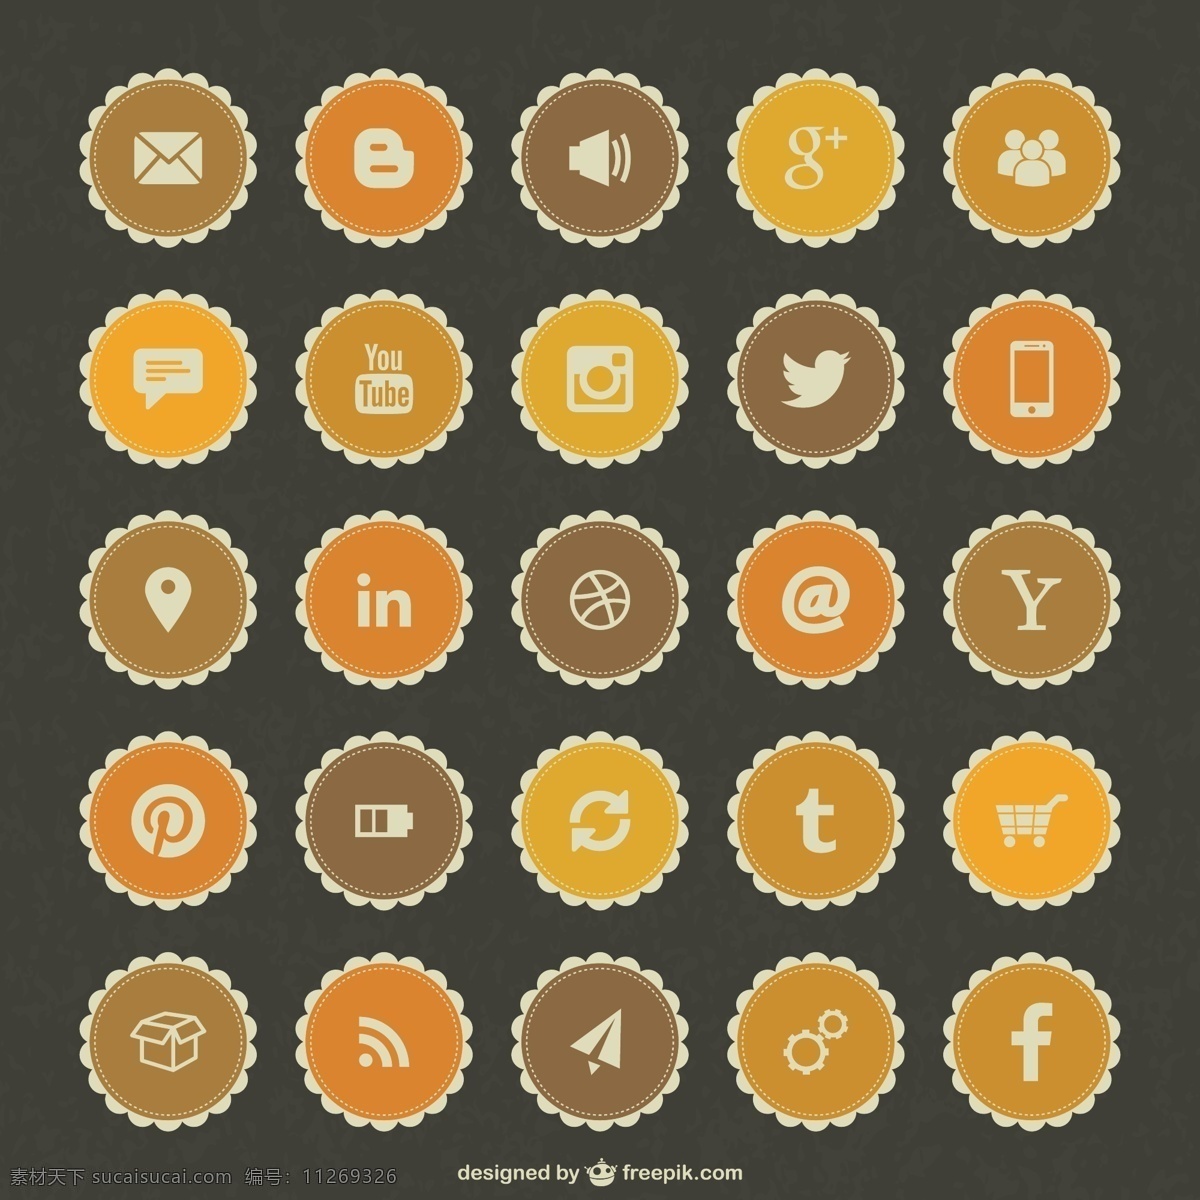 社会 媒体 邮票 图标 人 社交媒体 脸谱网技术 按钮 模板 instagram 社交 徽章 网络 购物 社交媒体图标 推特 布局 人力 脸谱网图标 橙色